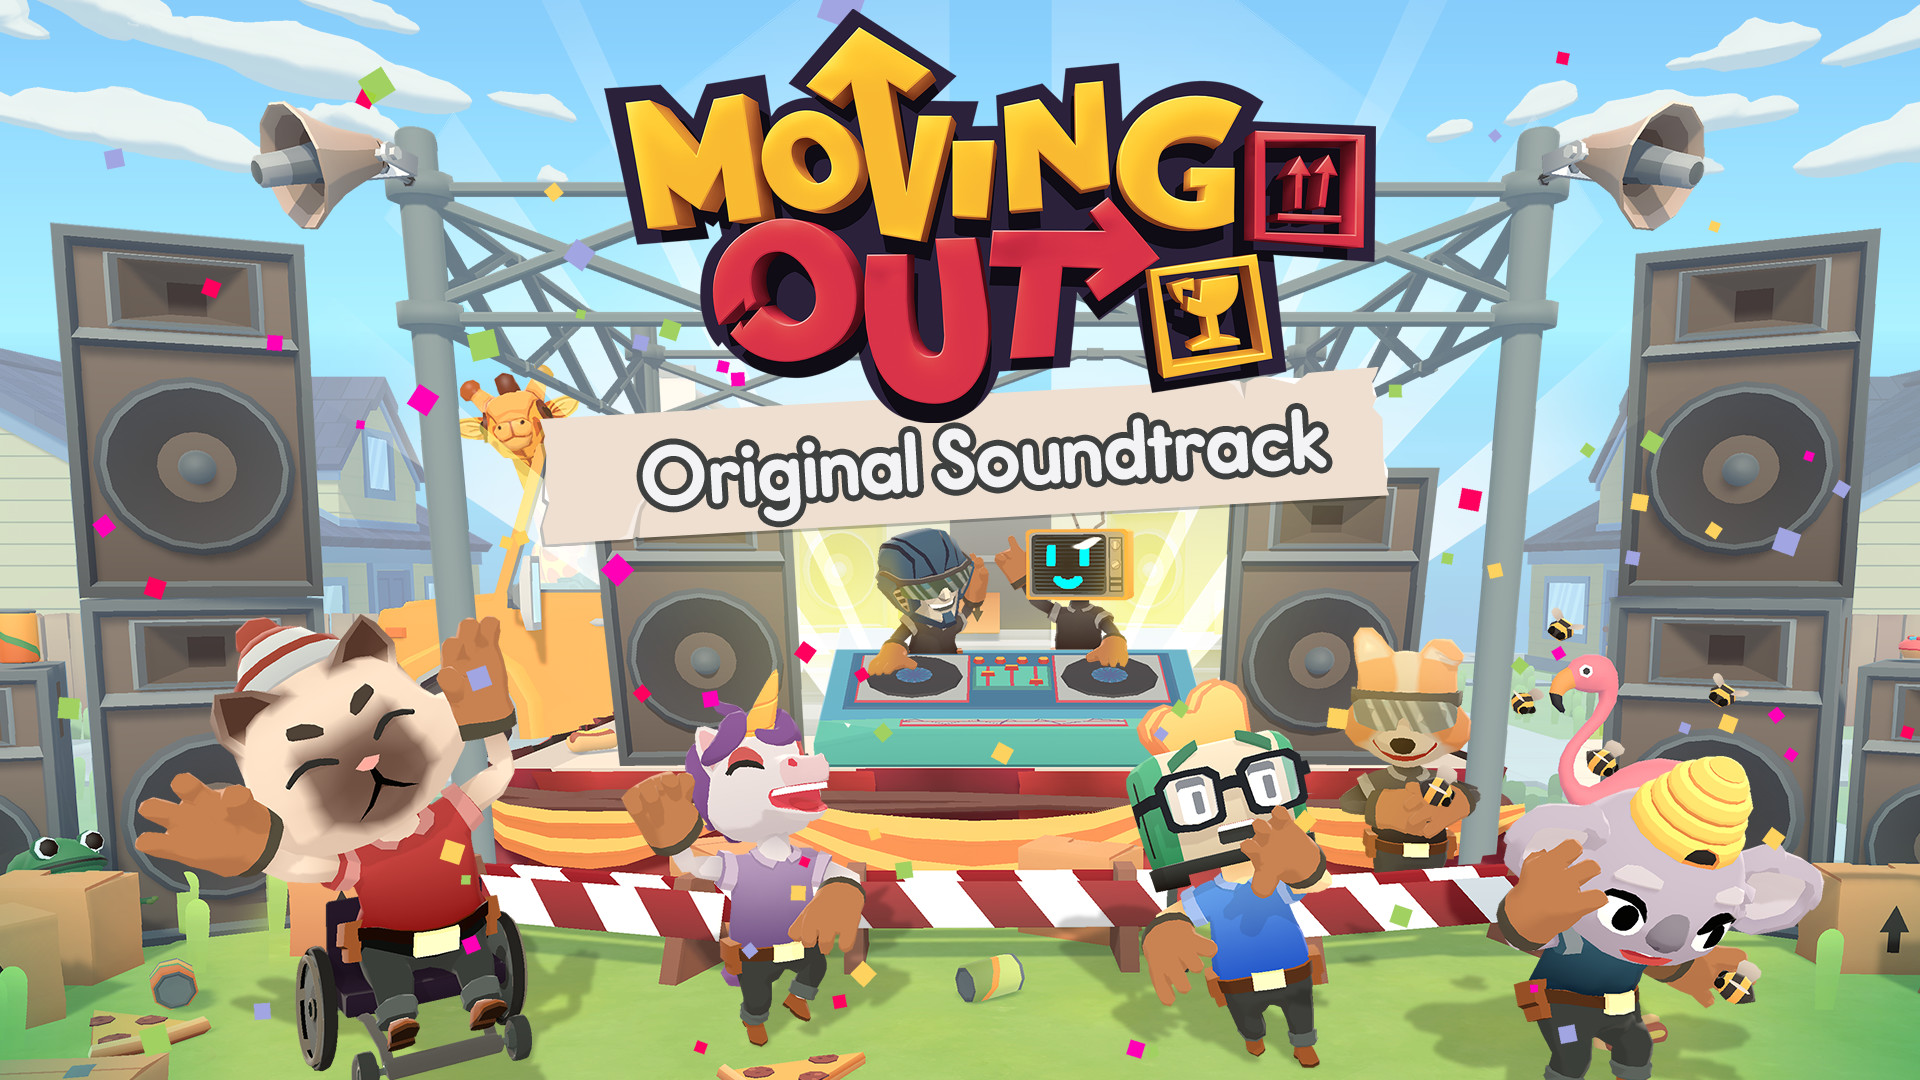 Moving Out - Original Soundtrack DLC Steam CD Key 4.66 $